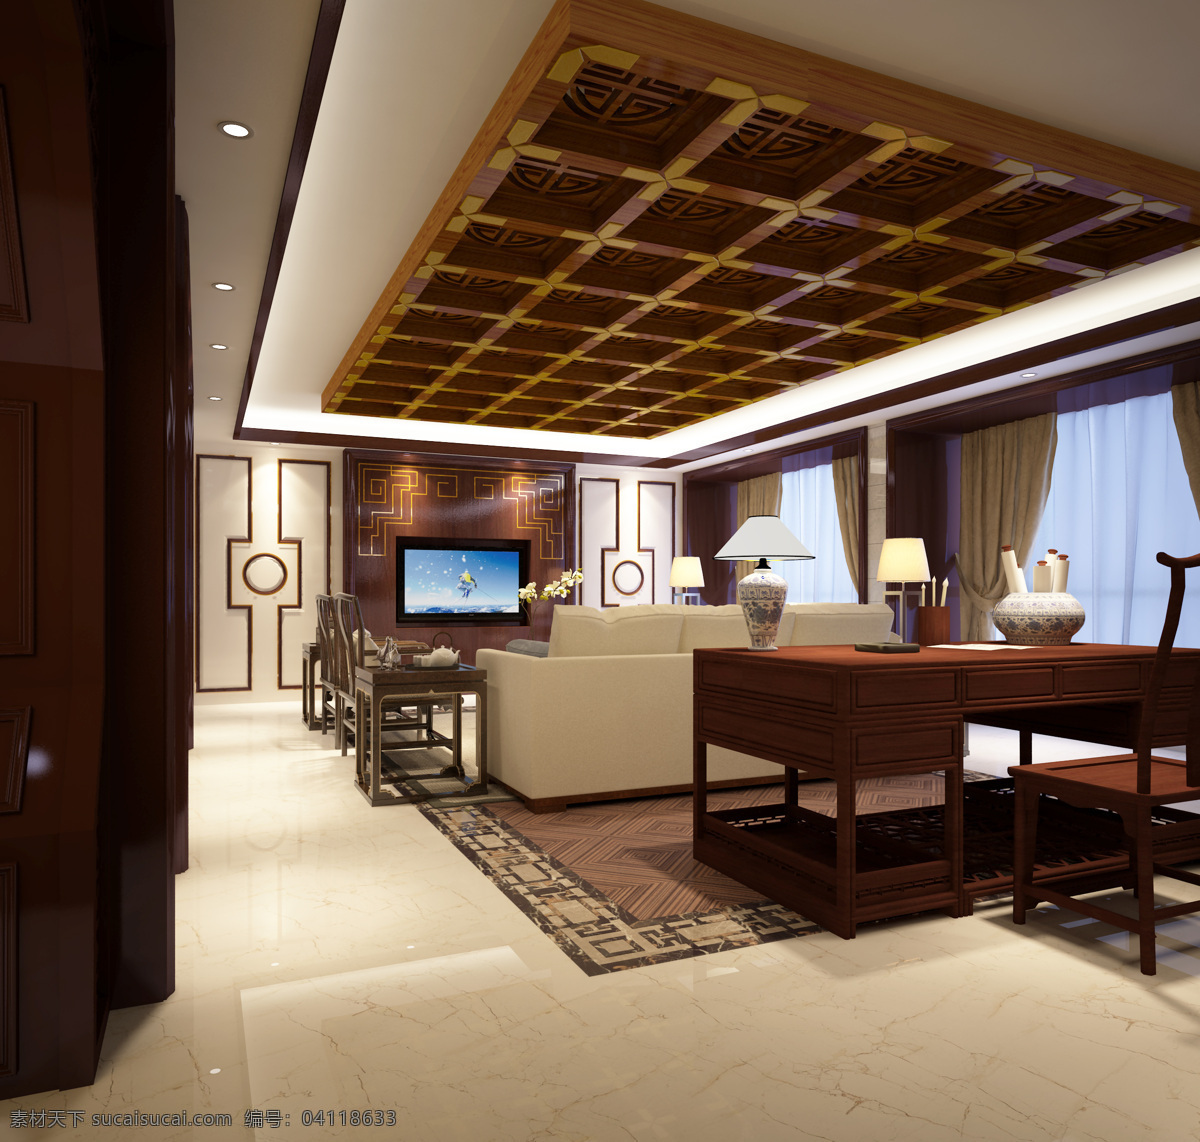 新 中式 别墅 客厅 新中式 大图 3d 室内人 环境设计 室内设计